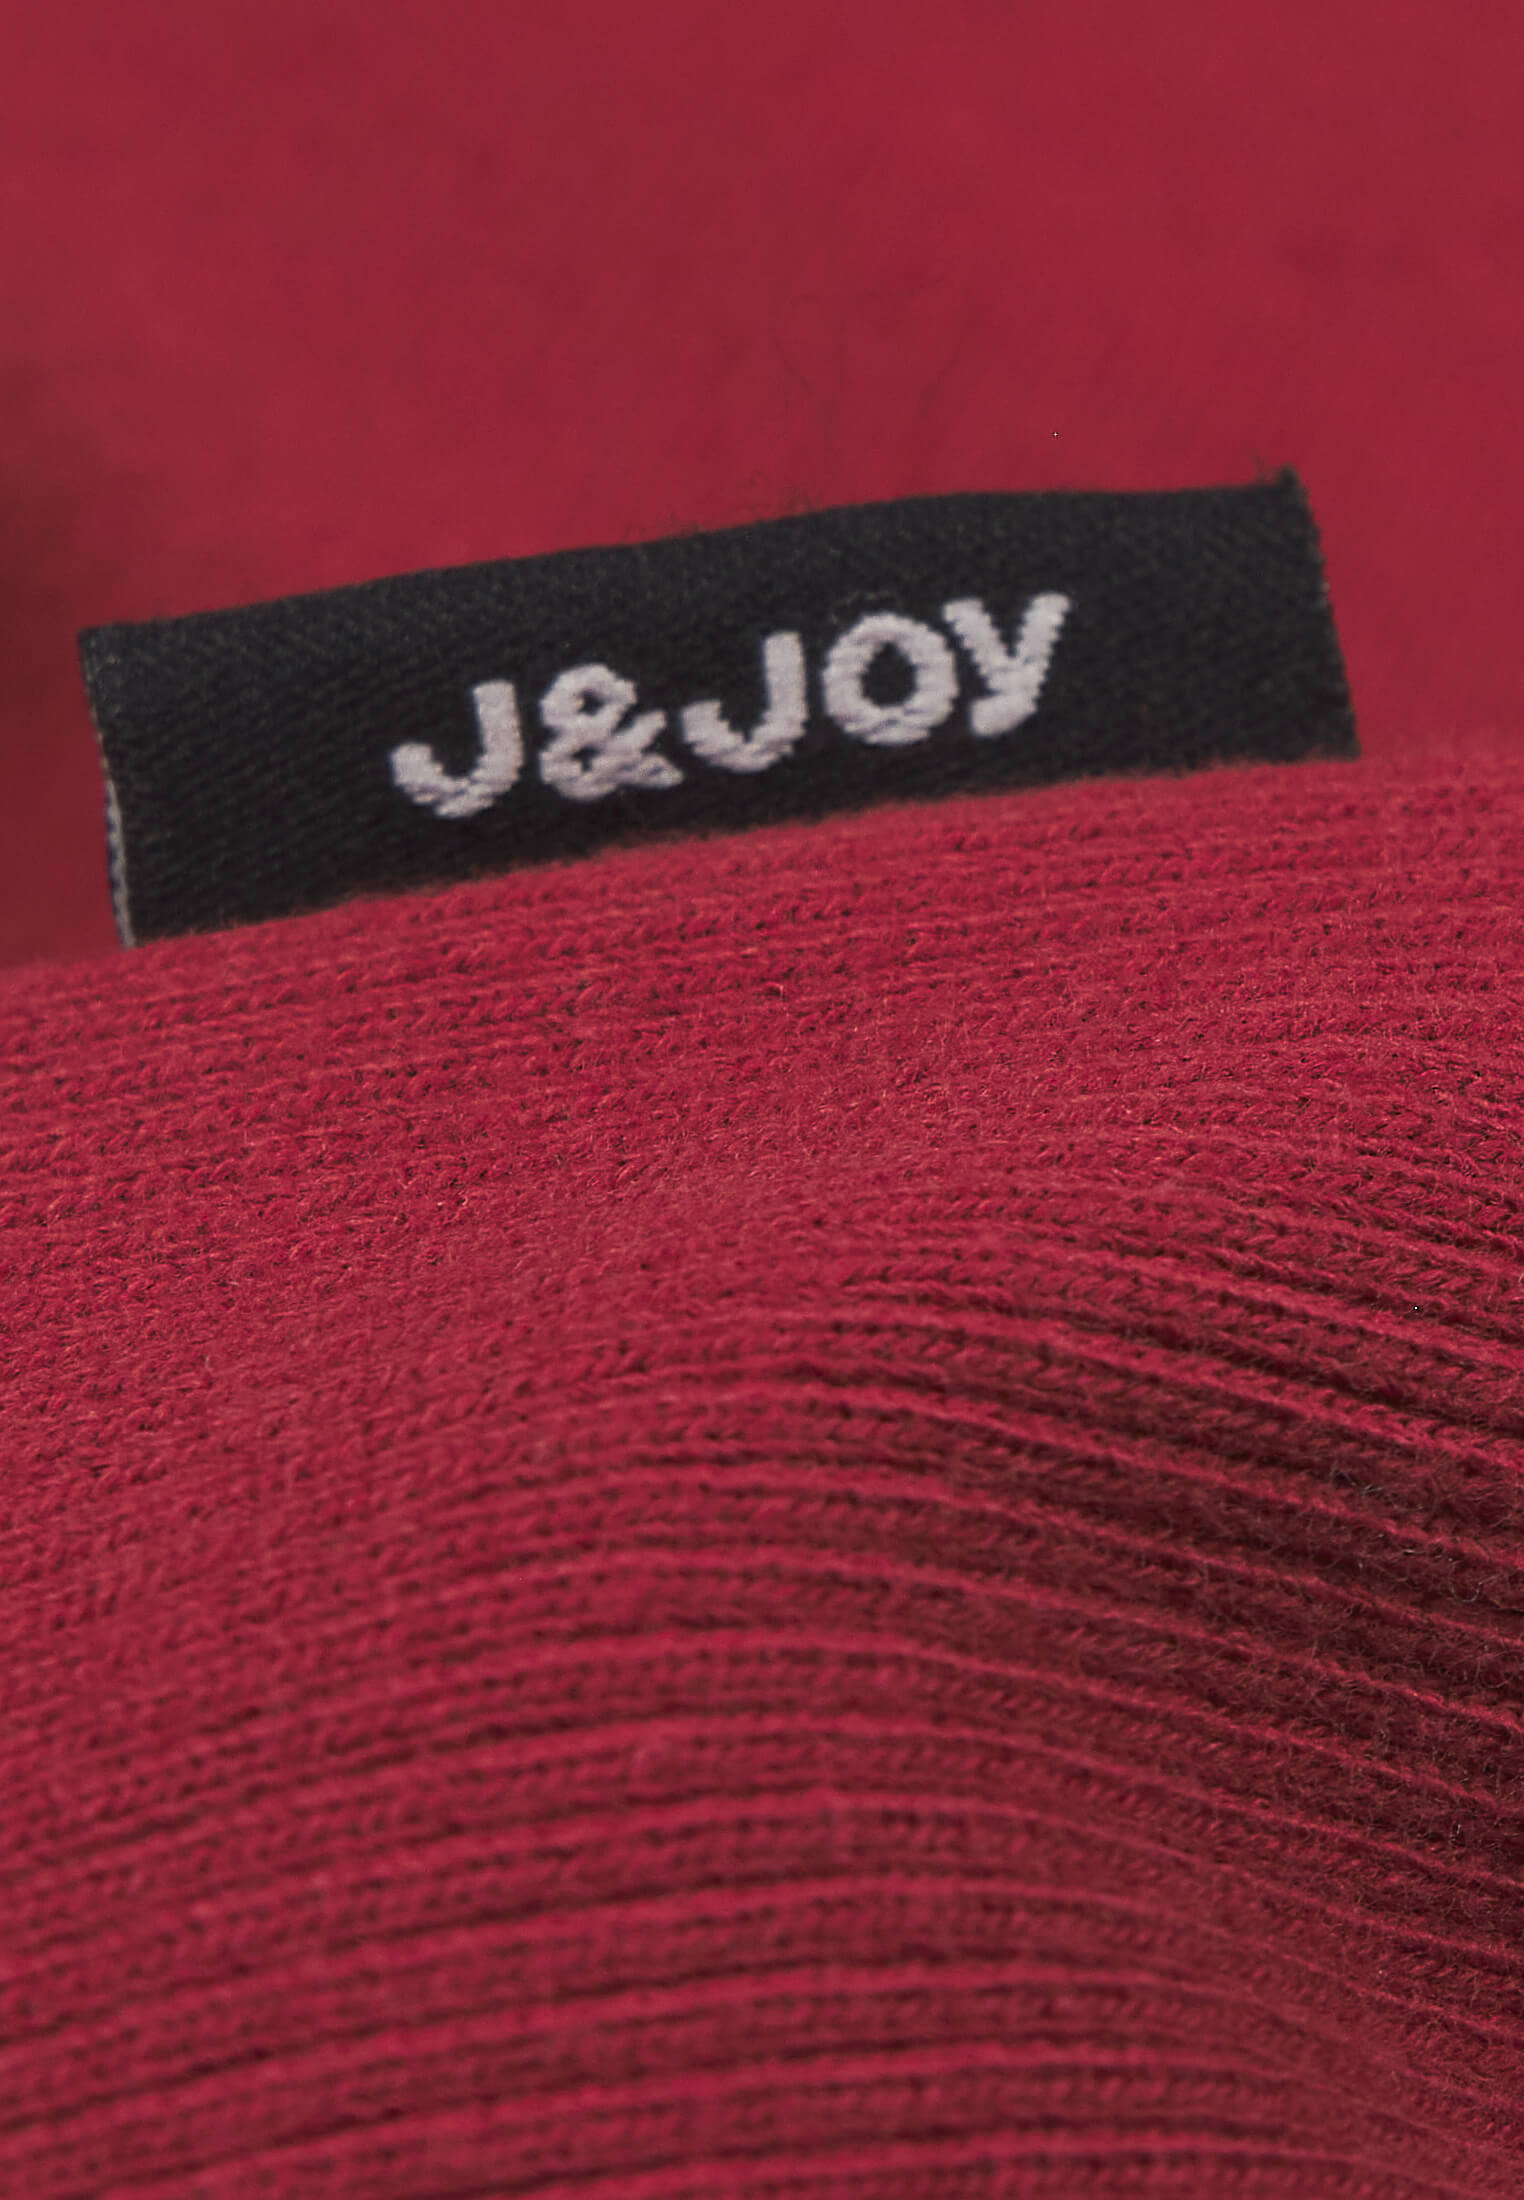 Sweatshirt Garçon 07 Hygge Brown Spice | J&JOY.